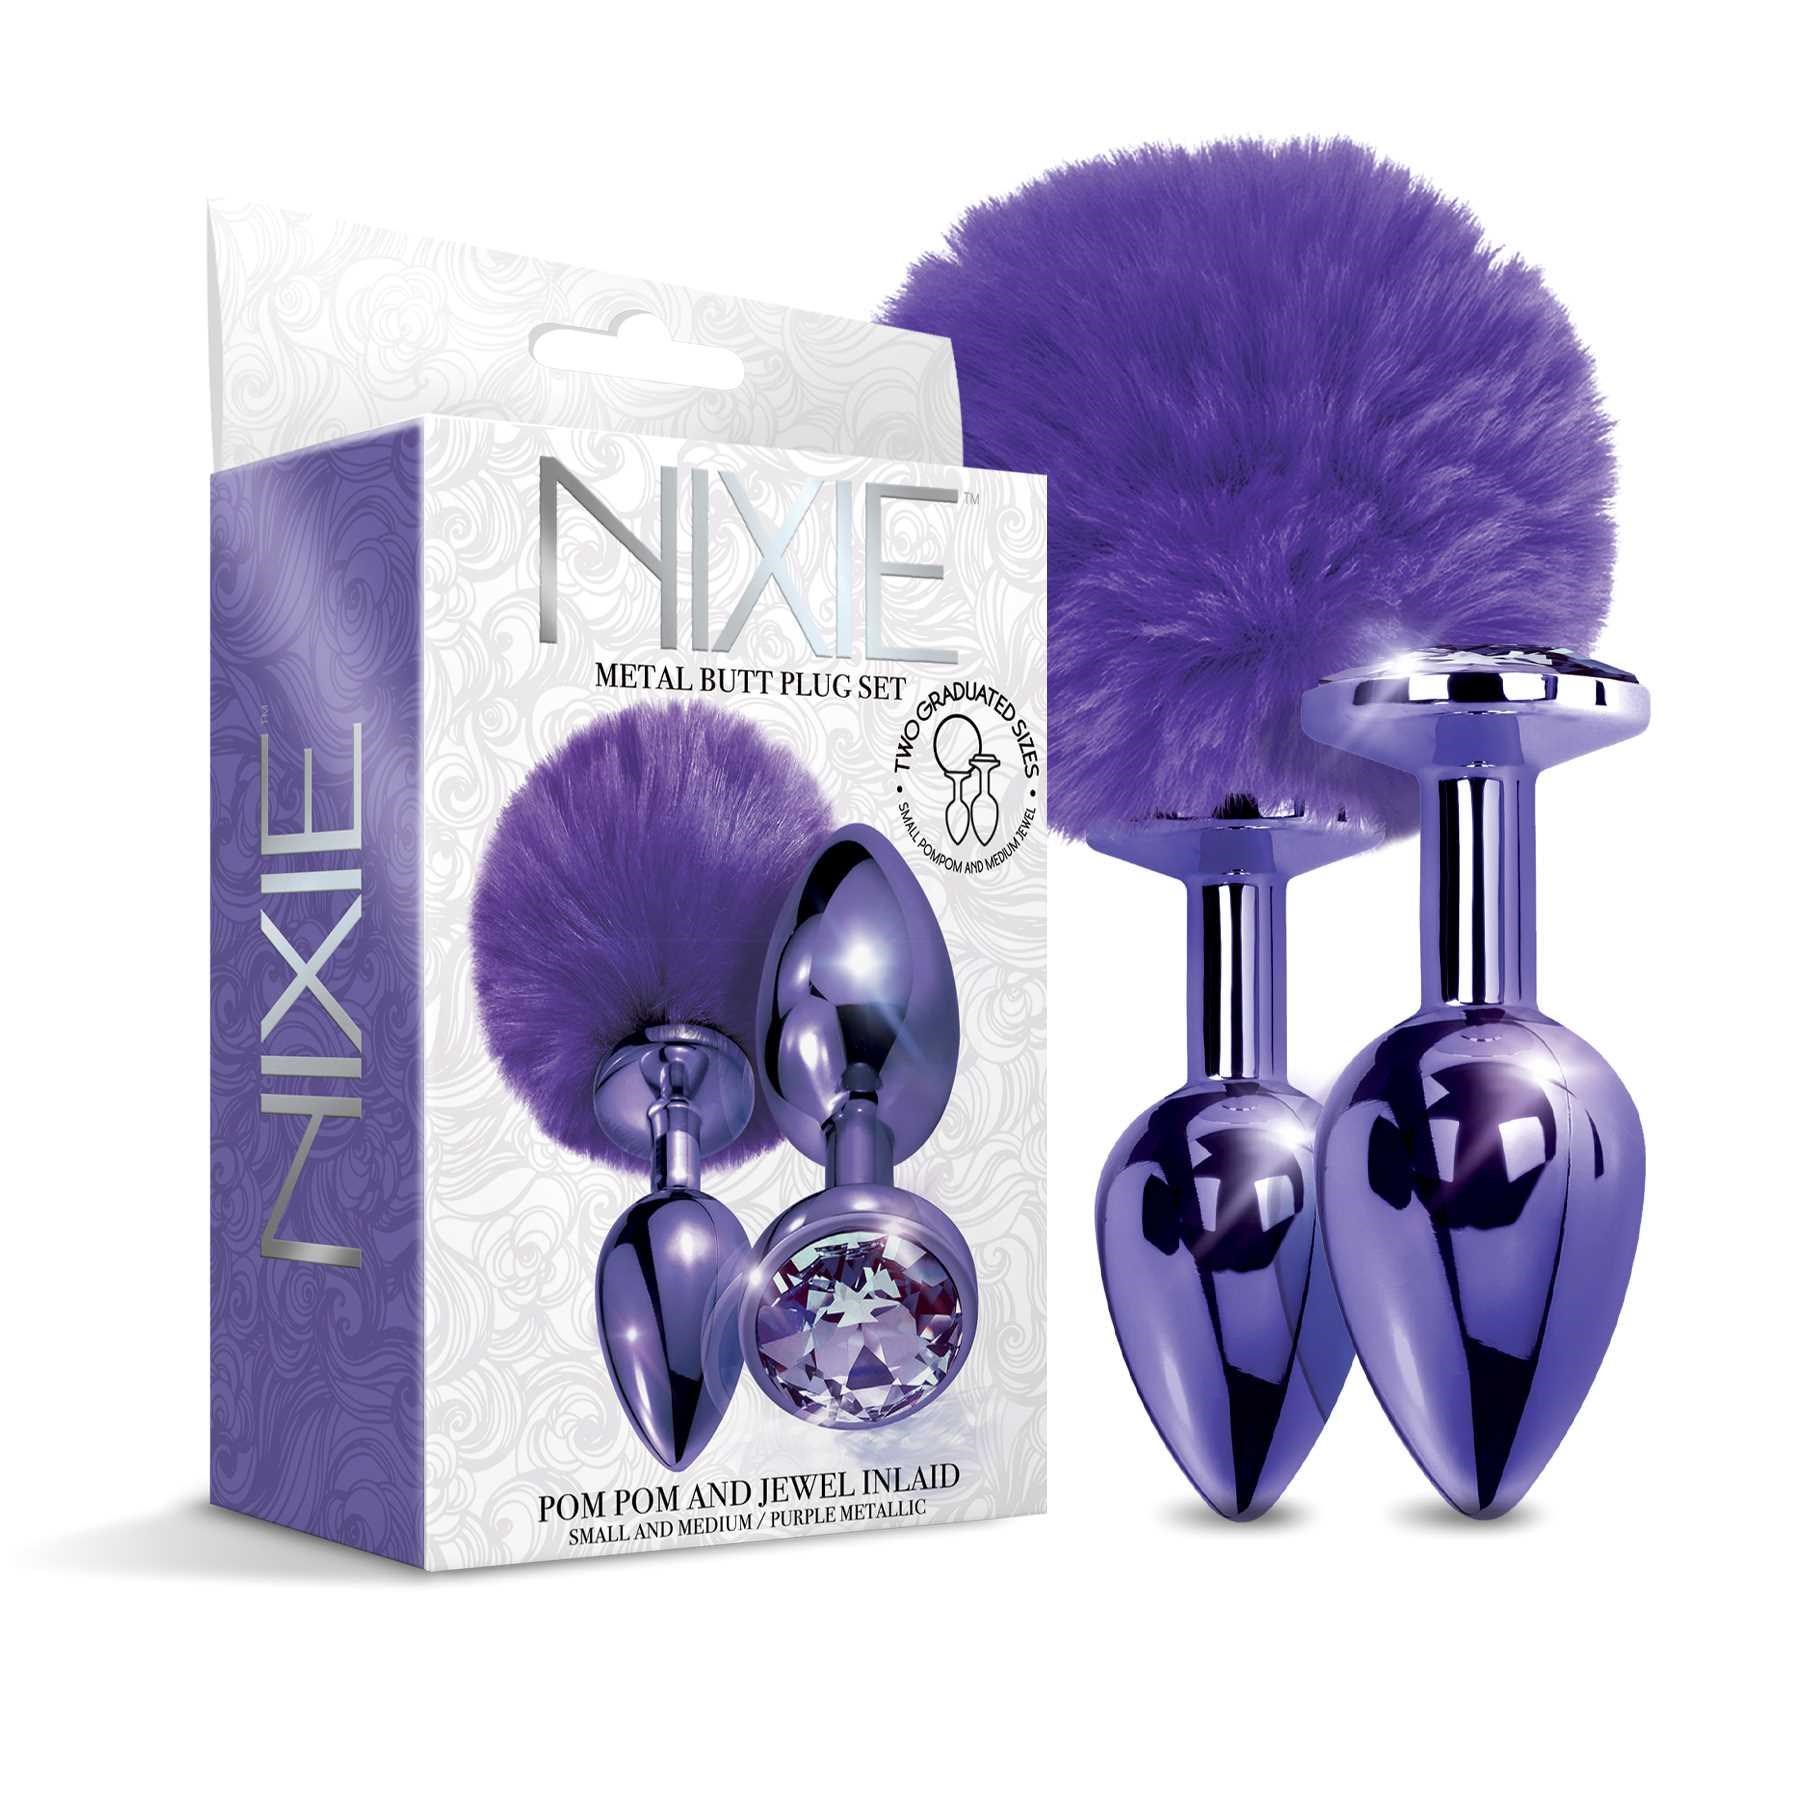 NIXIE Metal Butt Plug Set Pom Pom and Jewel Inlaid Metallic purple with box